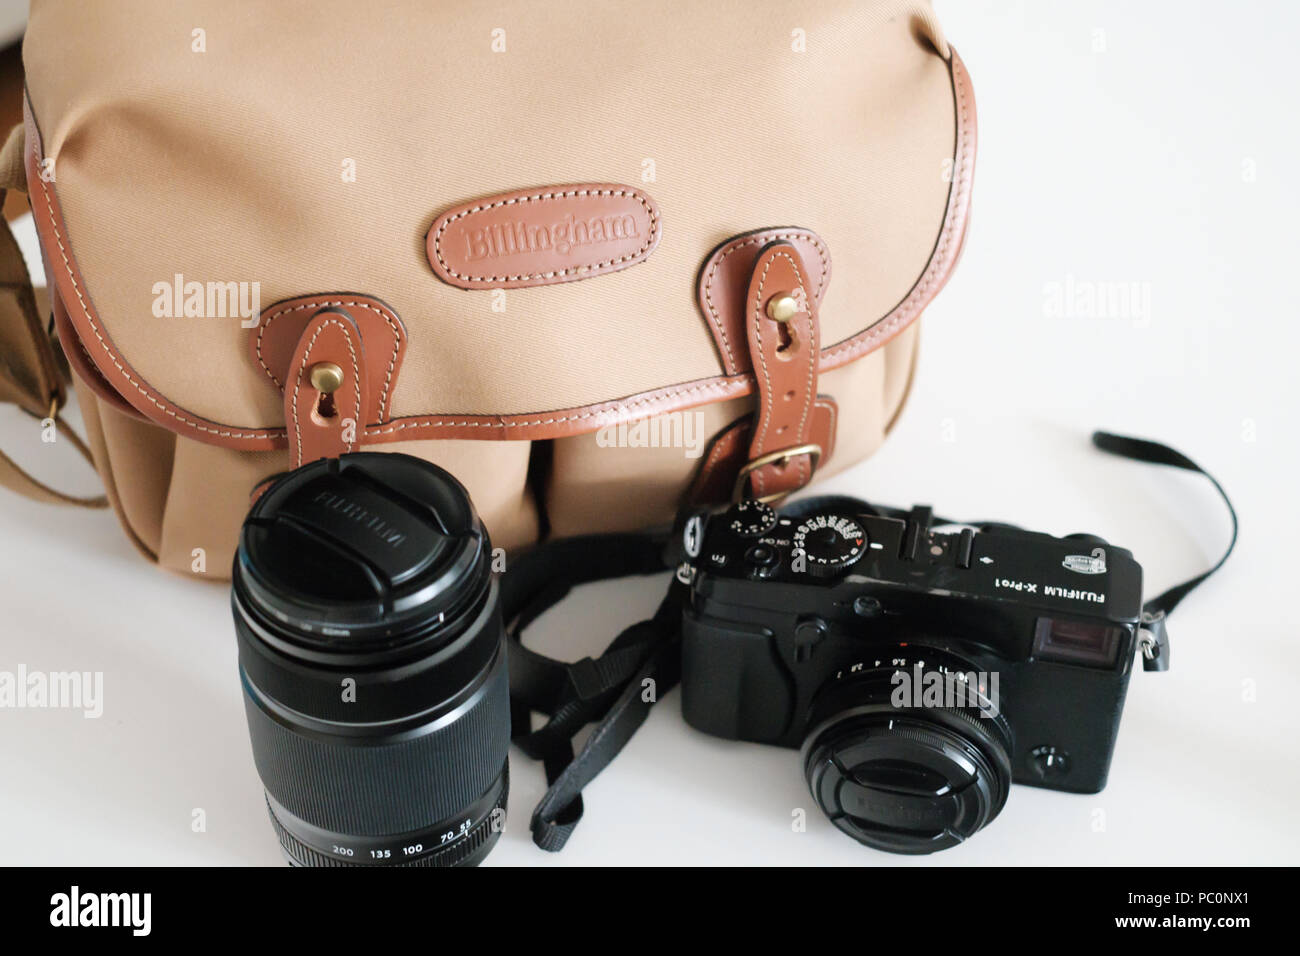 Billingham fotocamera borsa con uno stile rétro Fuji mirrorless fotocamera e lenti Foto Stock